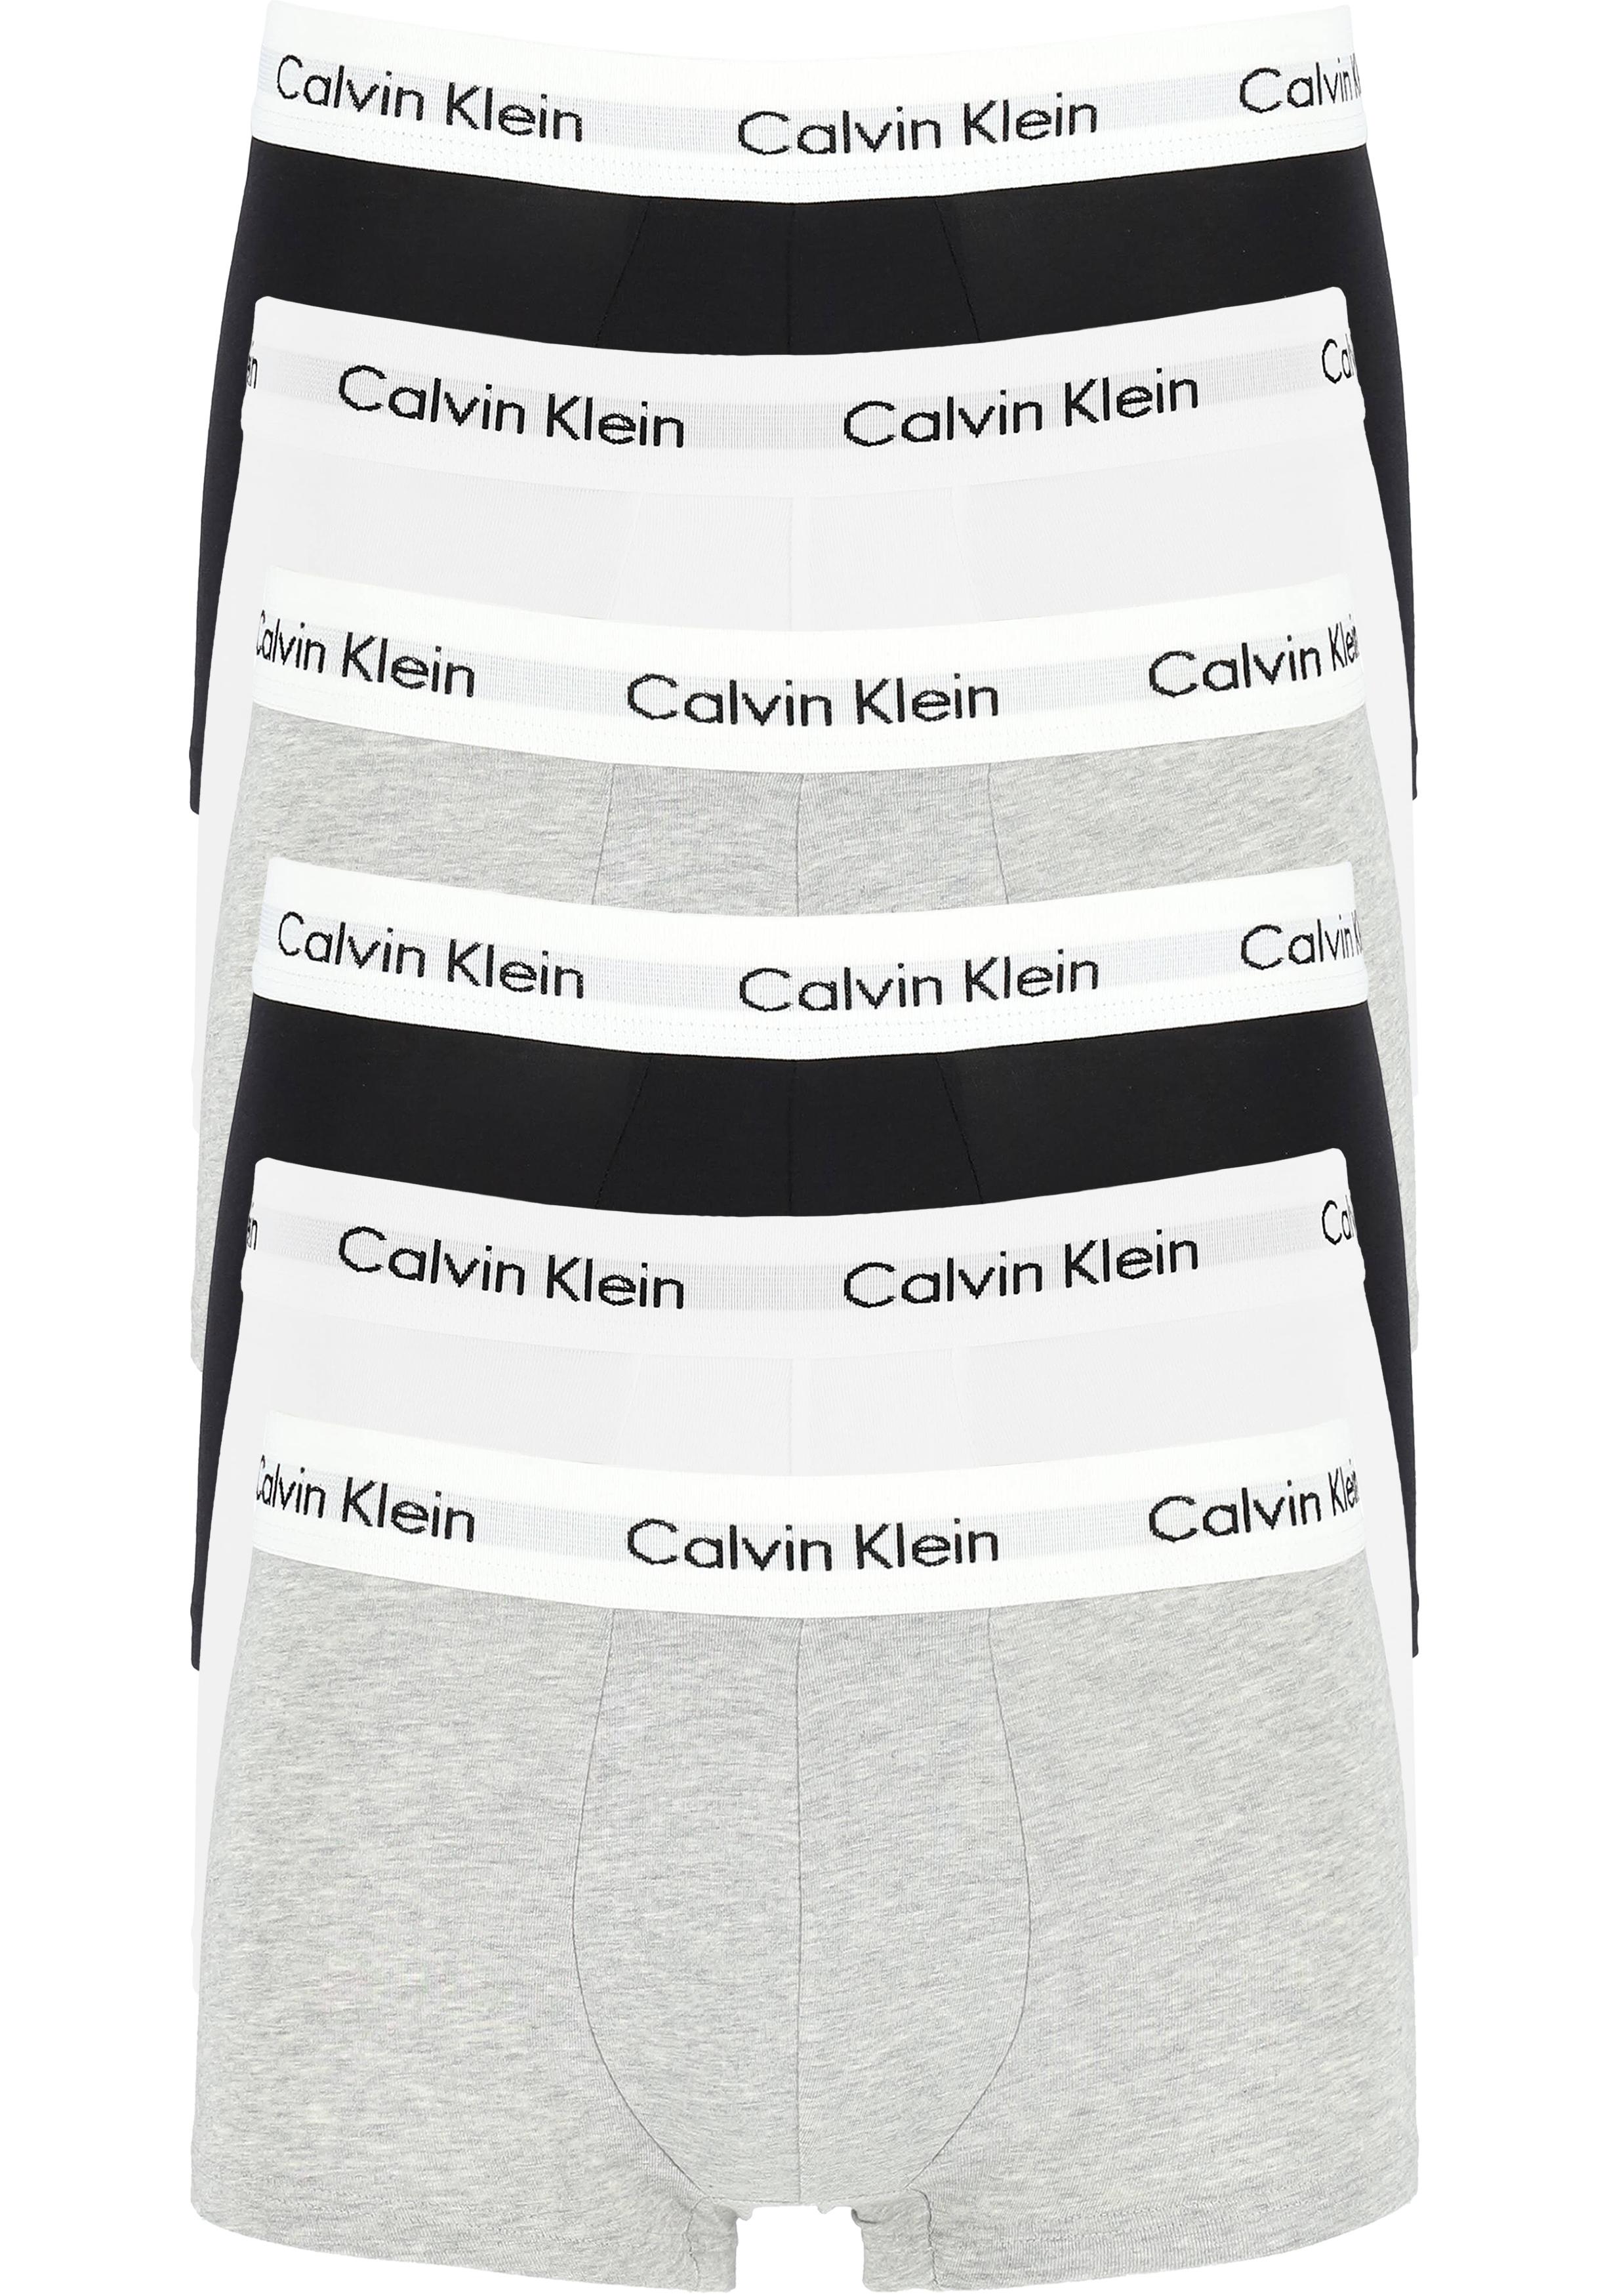 partitie Saai Museum Actie 6-pack: Calvin Klein low rise trunks, lage heren boxers kort,... -  Shop de nieuwste voorjaarsmode